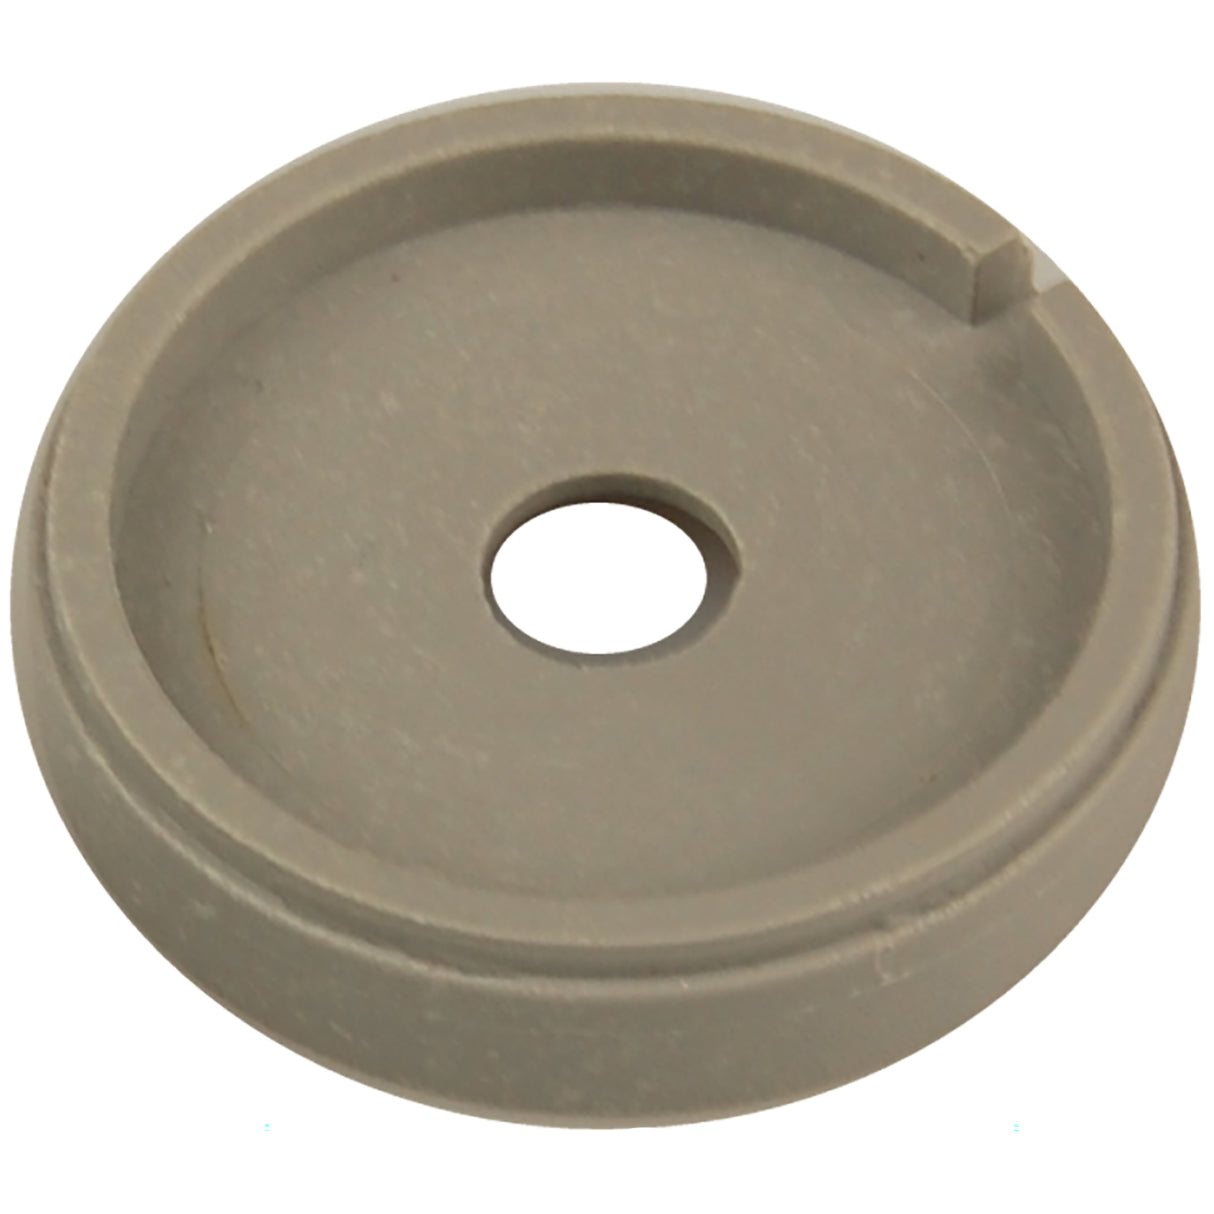 Membrane retaining ring 6.1mm Förster